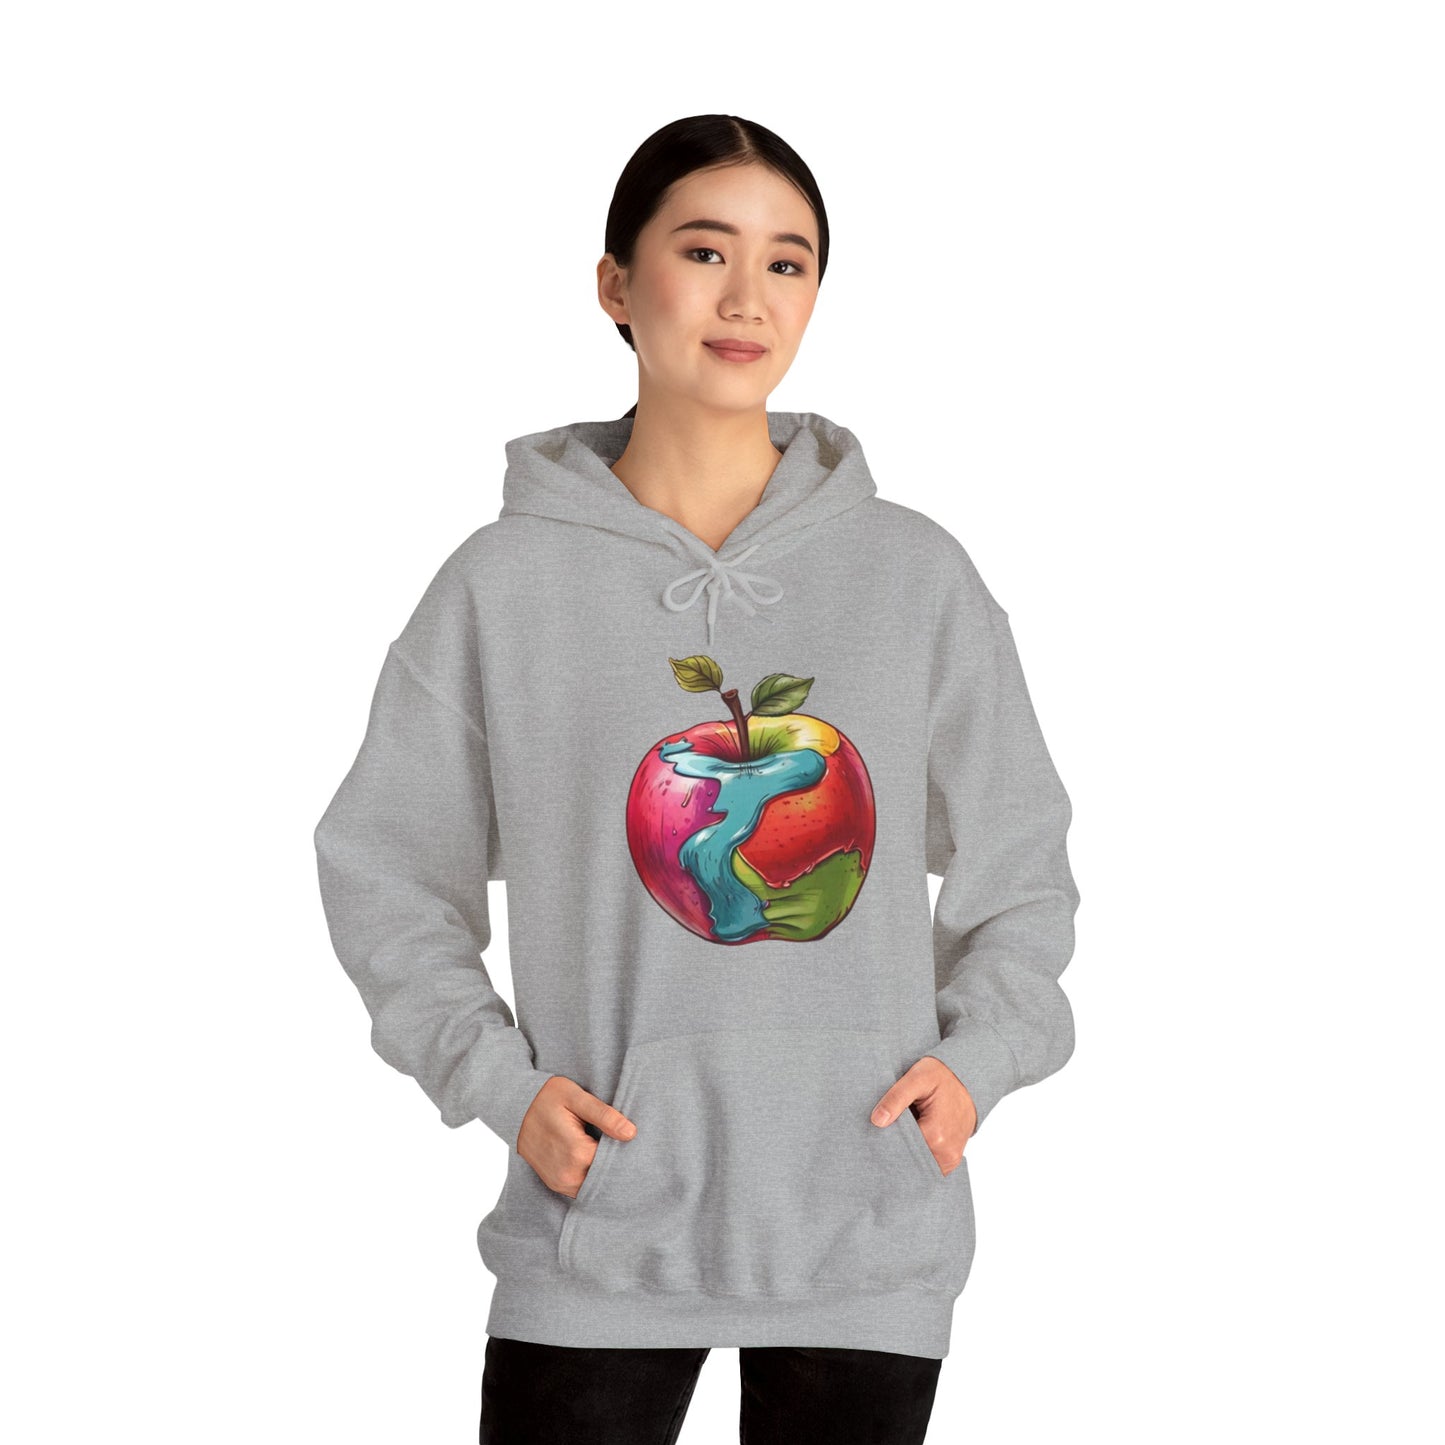 Colourful Apple - Unisex Hooded Sweatshirt